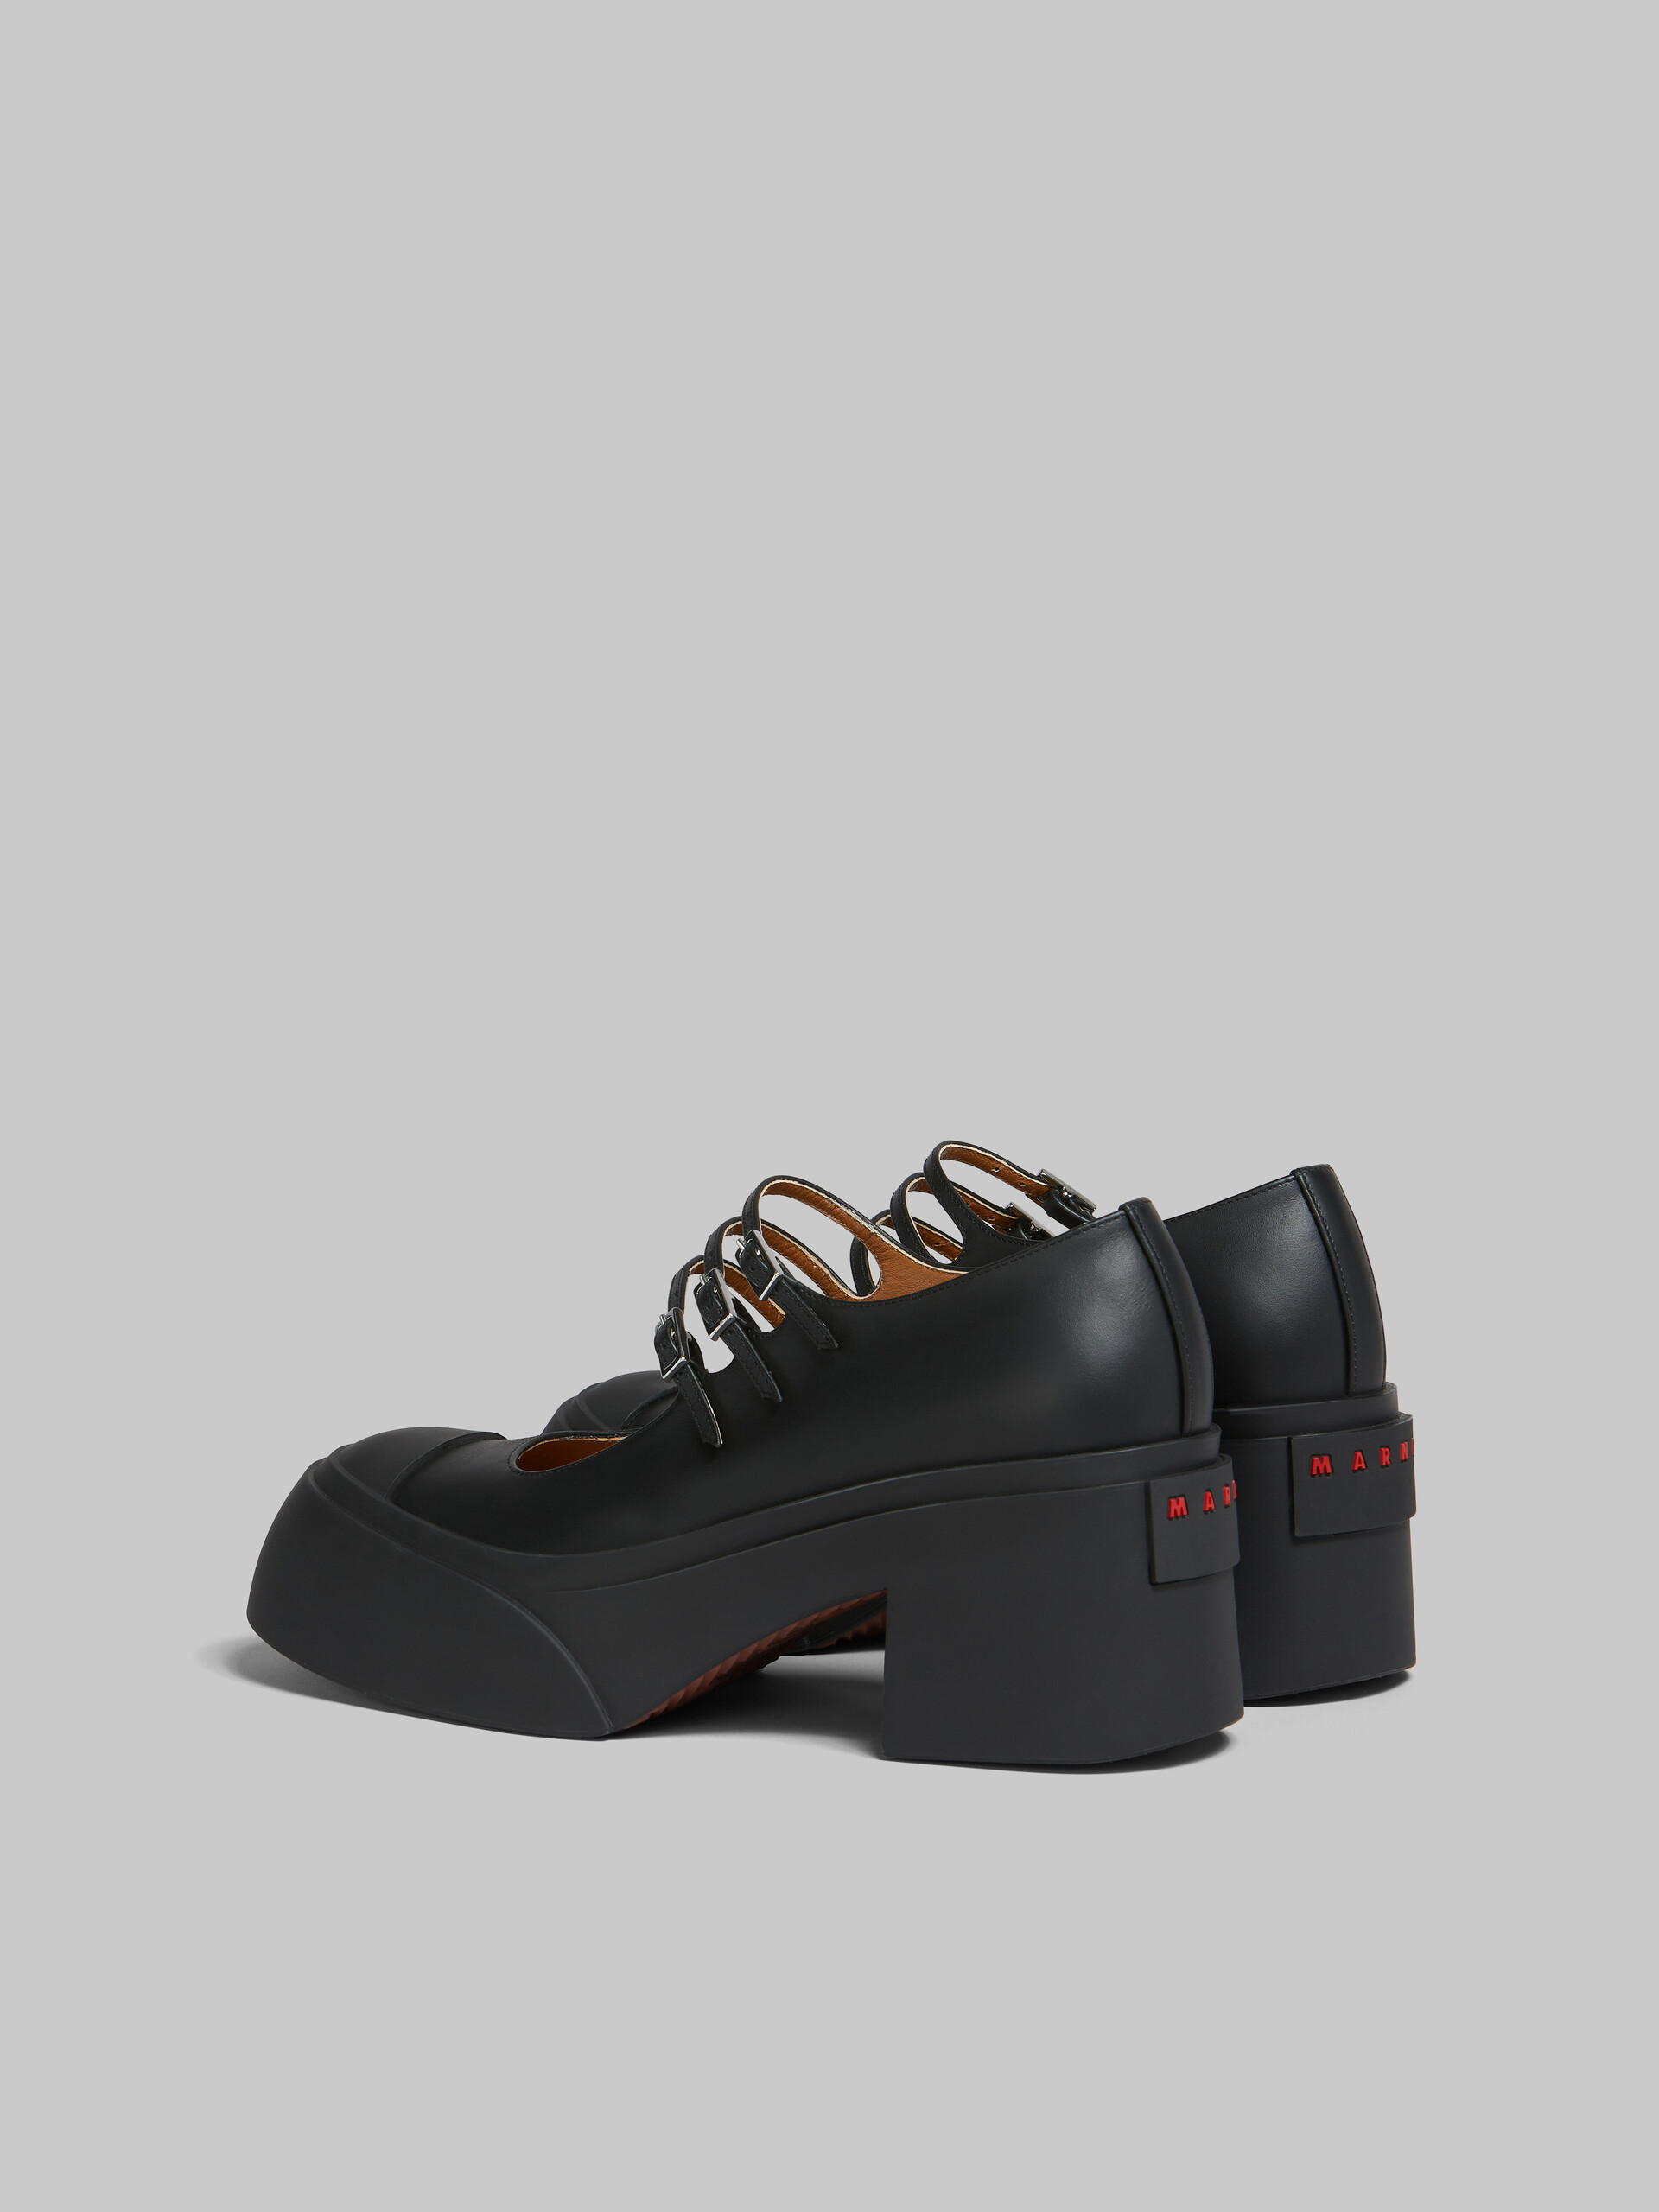 Sneakers Mary Jane Pablo en cuir noir avec trois brides - Sneakers - Image 3